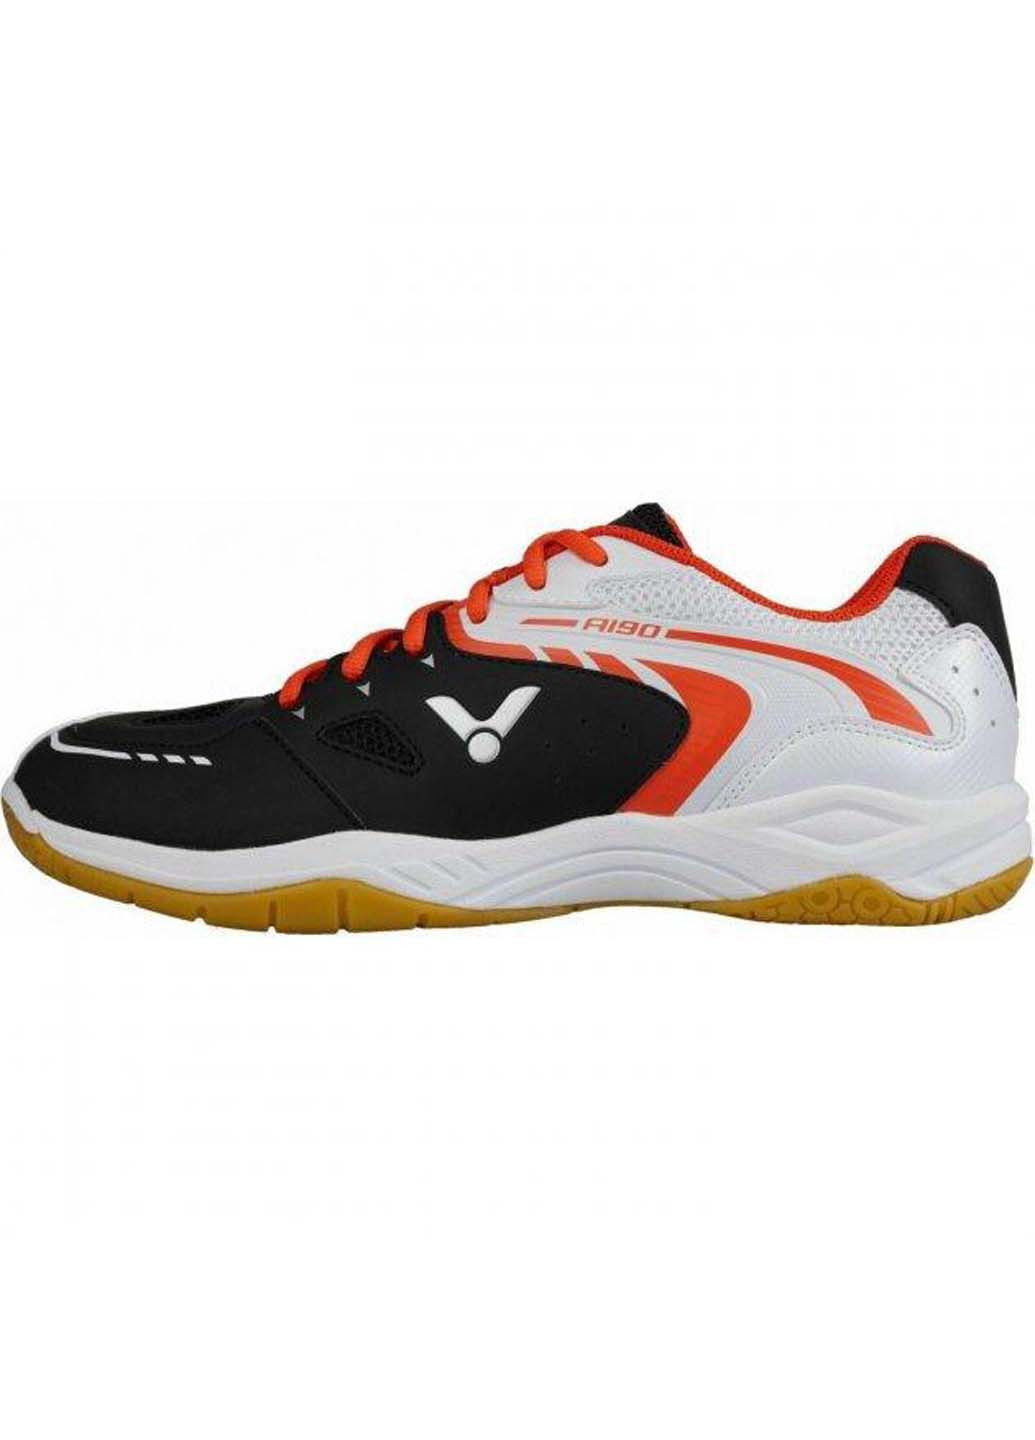 Цветные демисезонные кроссовки для сквоша Victor A190 Indoor